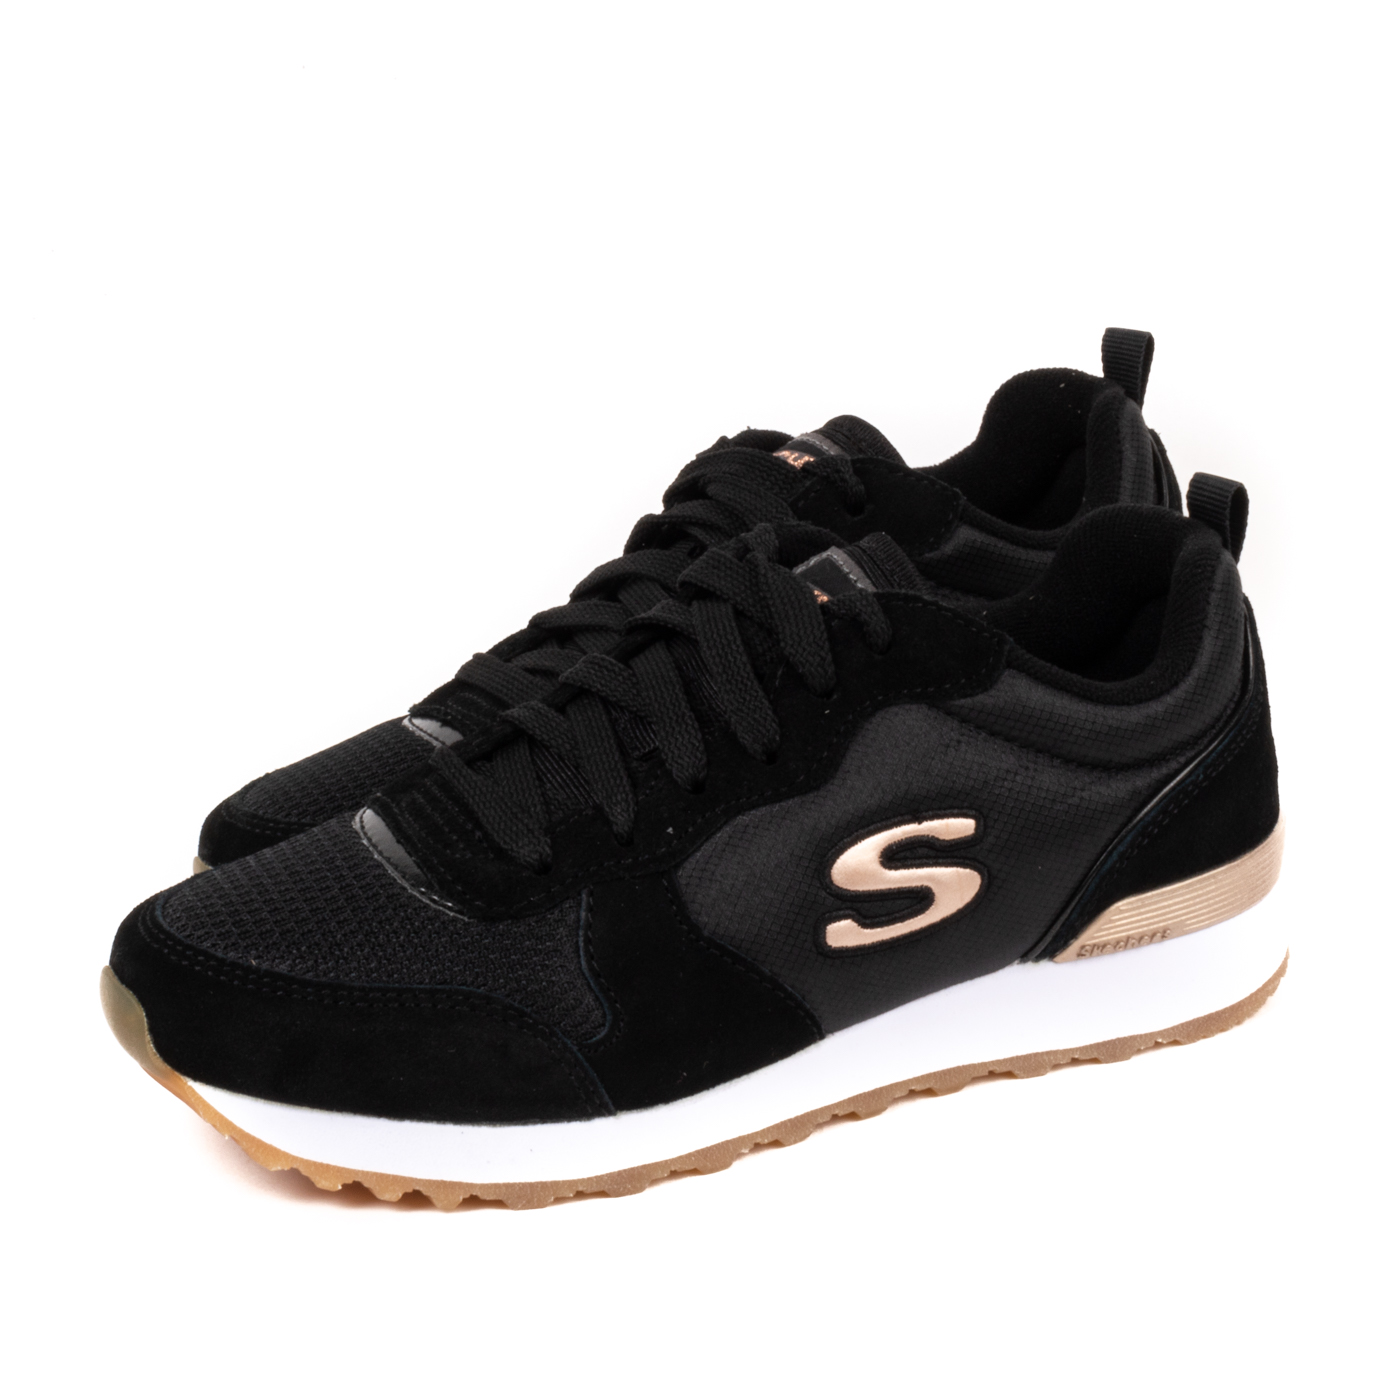 Skechers - Sneakers Donna stringate con dettagli dorati e soletta in memory  foam - Nero - MitShopping - Abbigliamento e scarpe